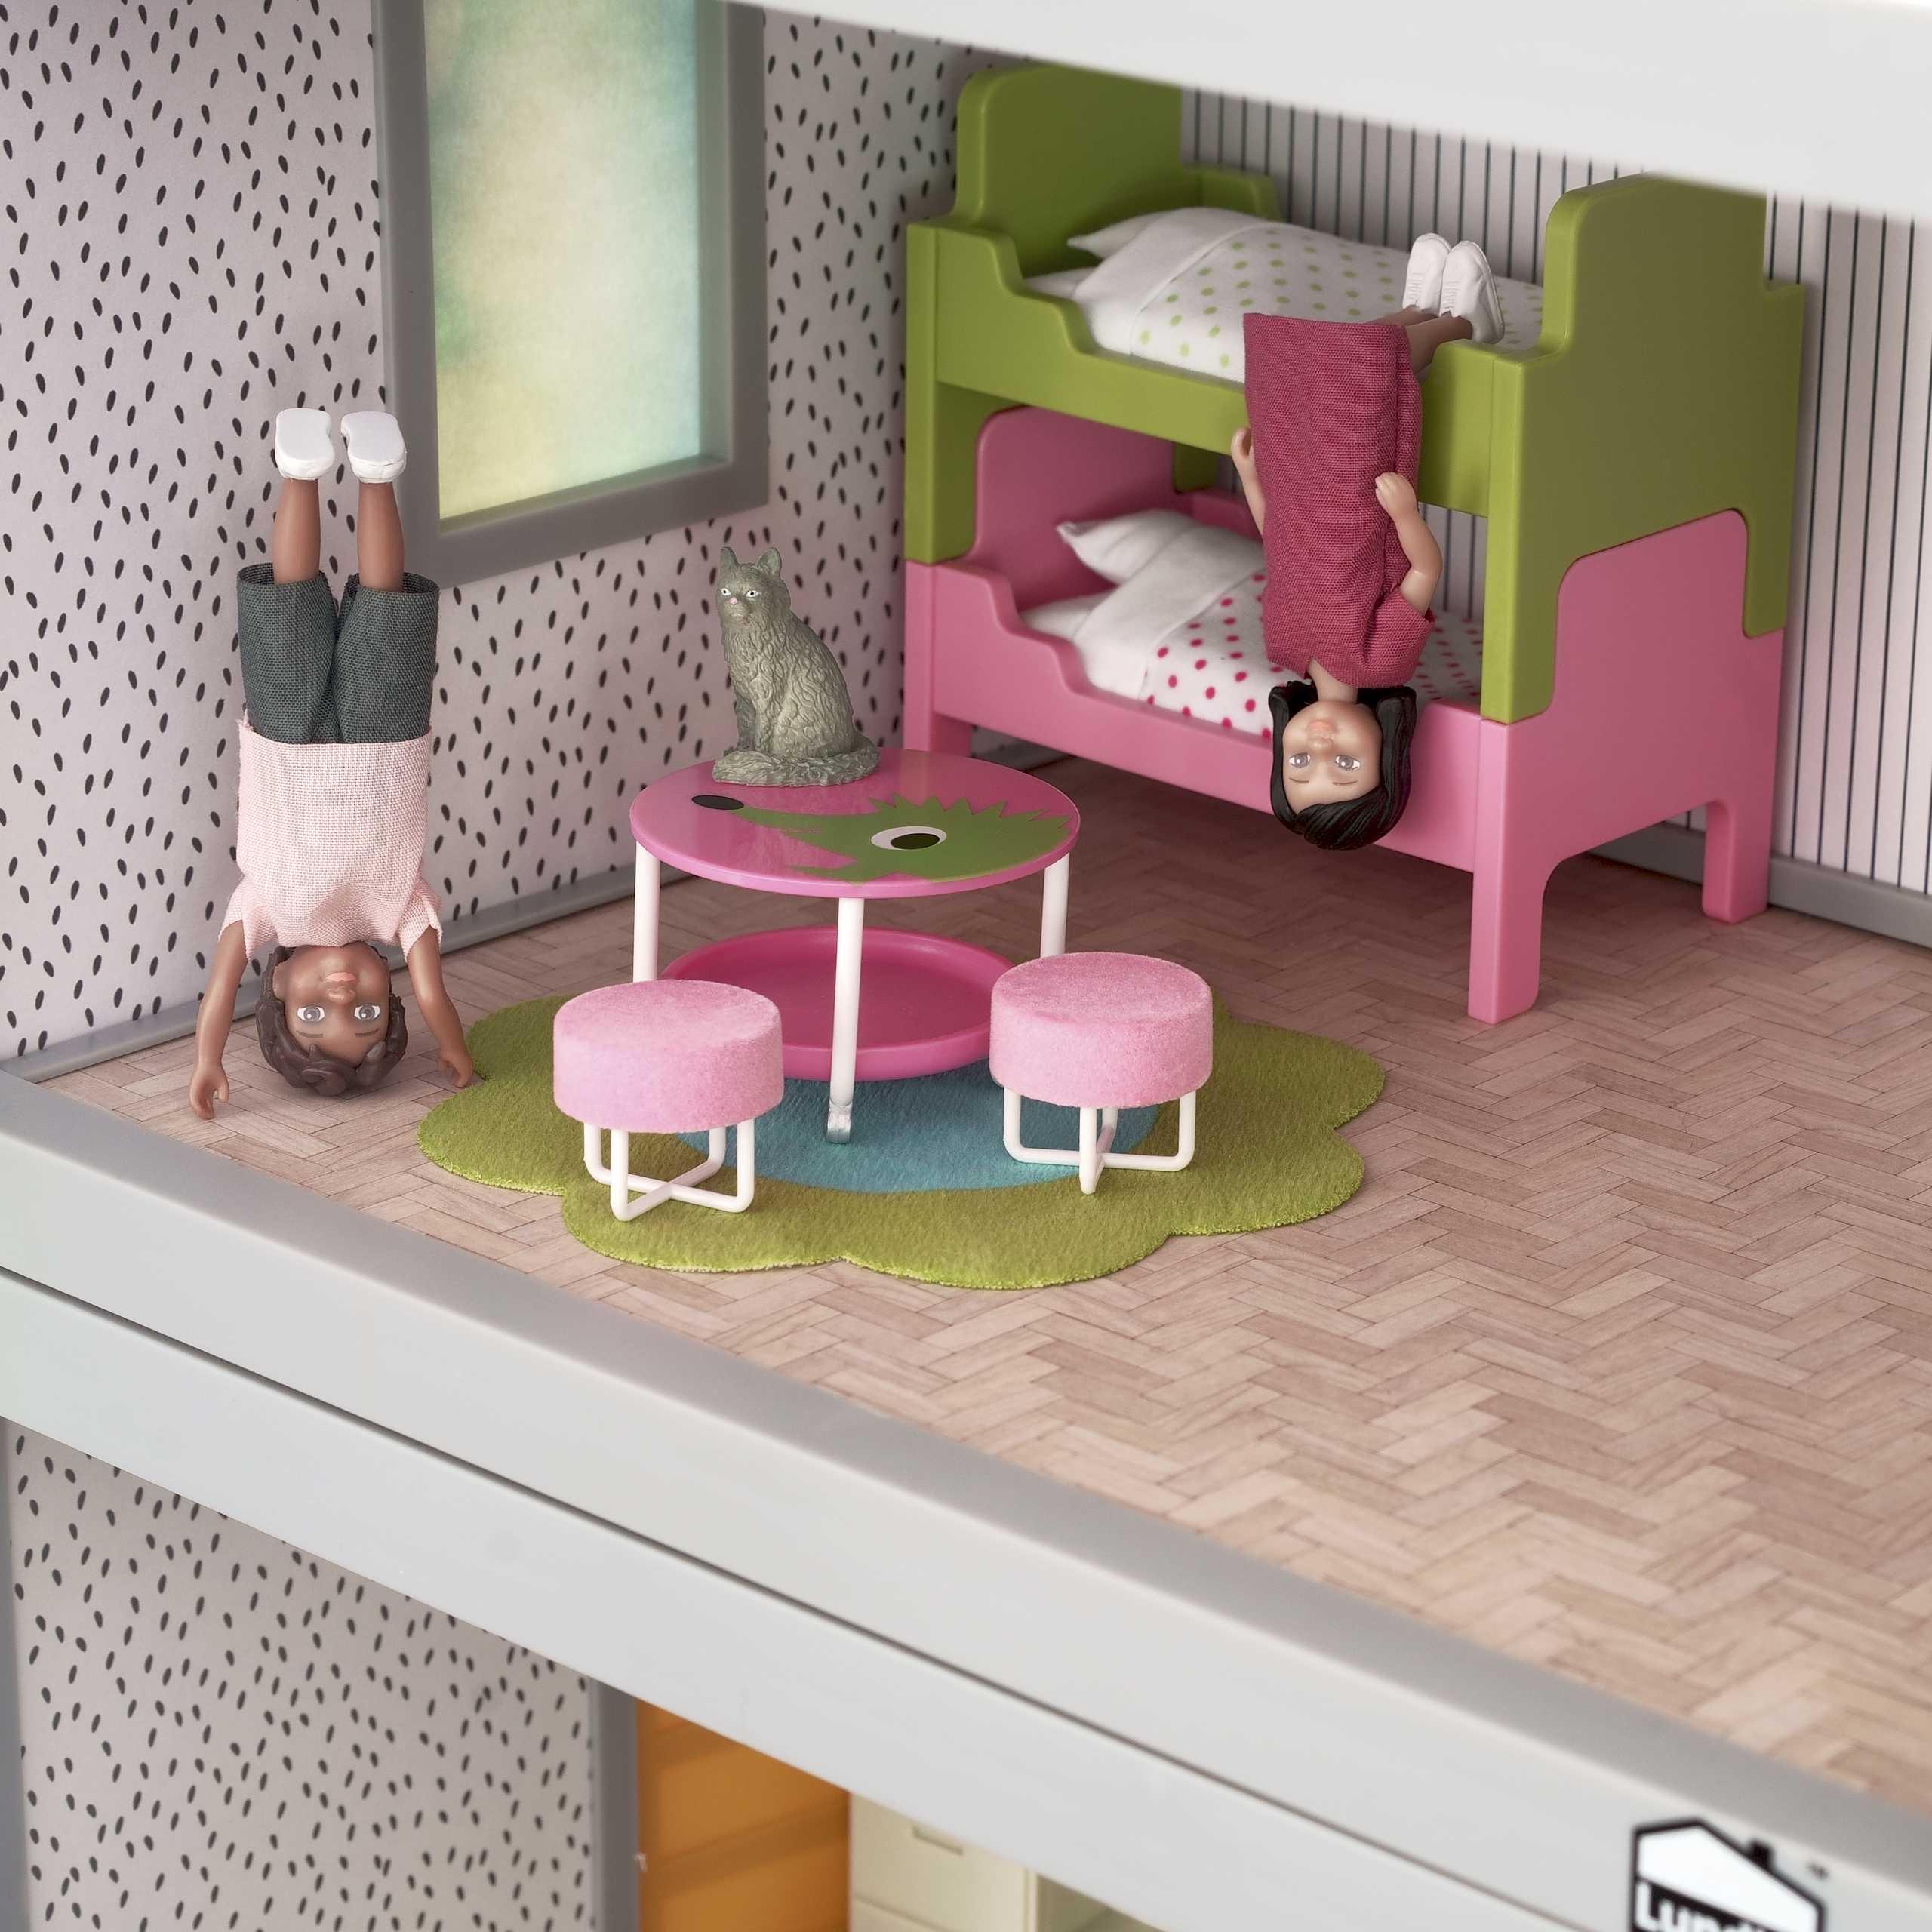 Lundby lundby dollhouse furniture kids' room